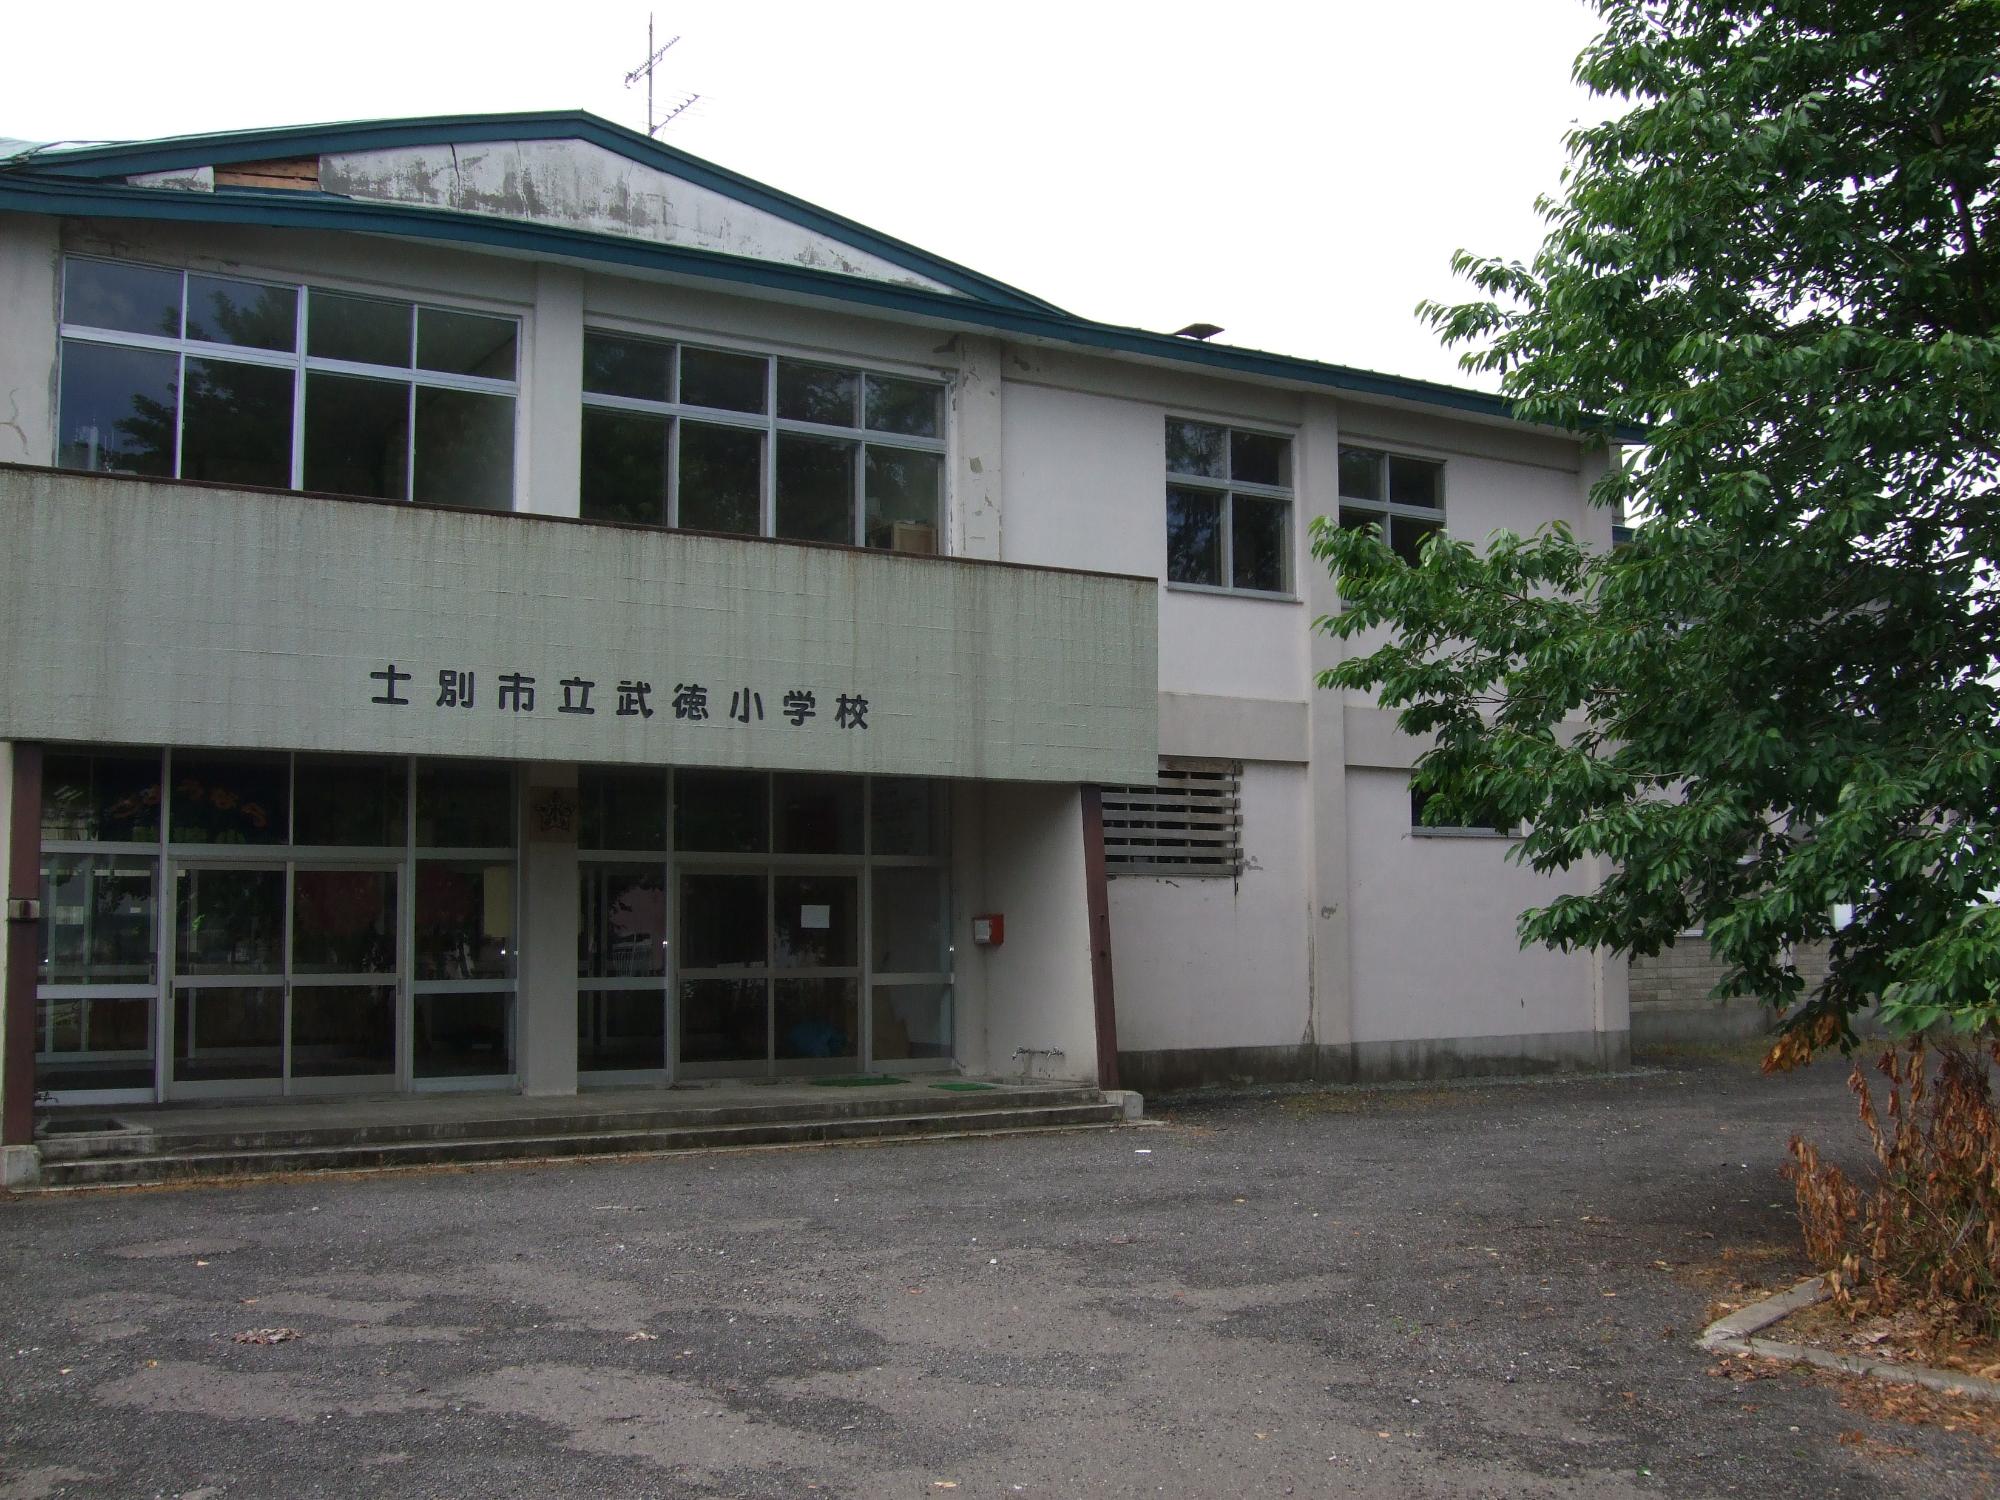 校舎の入り口上に「士別市武徳小学校」と書かれた2階建ての旧武徳小学校の校舎の写真